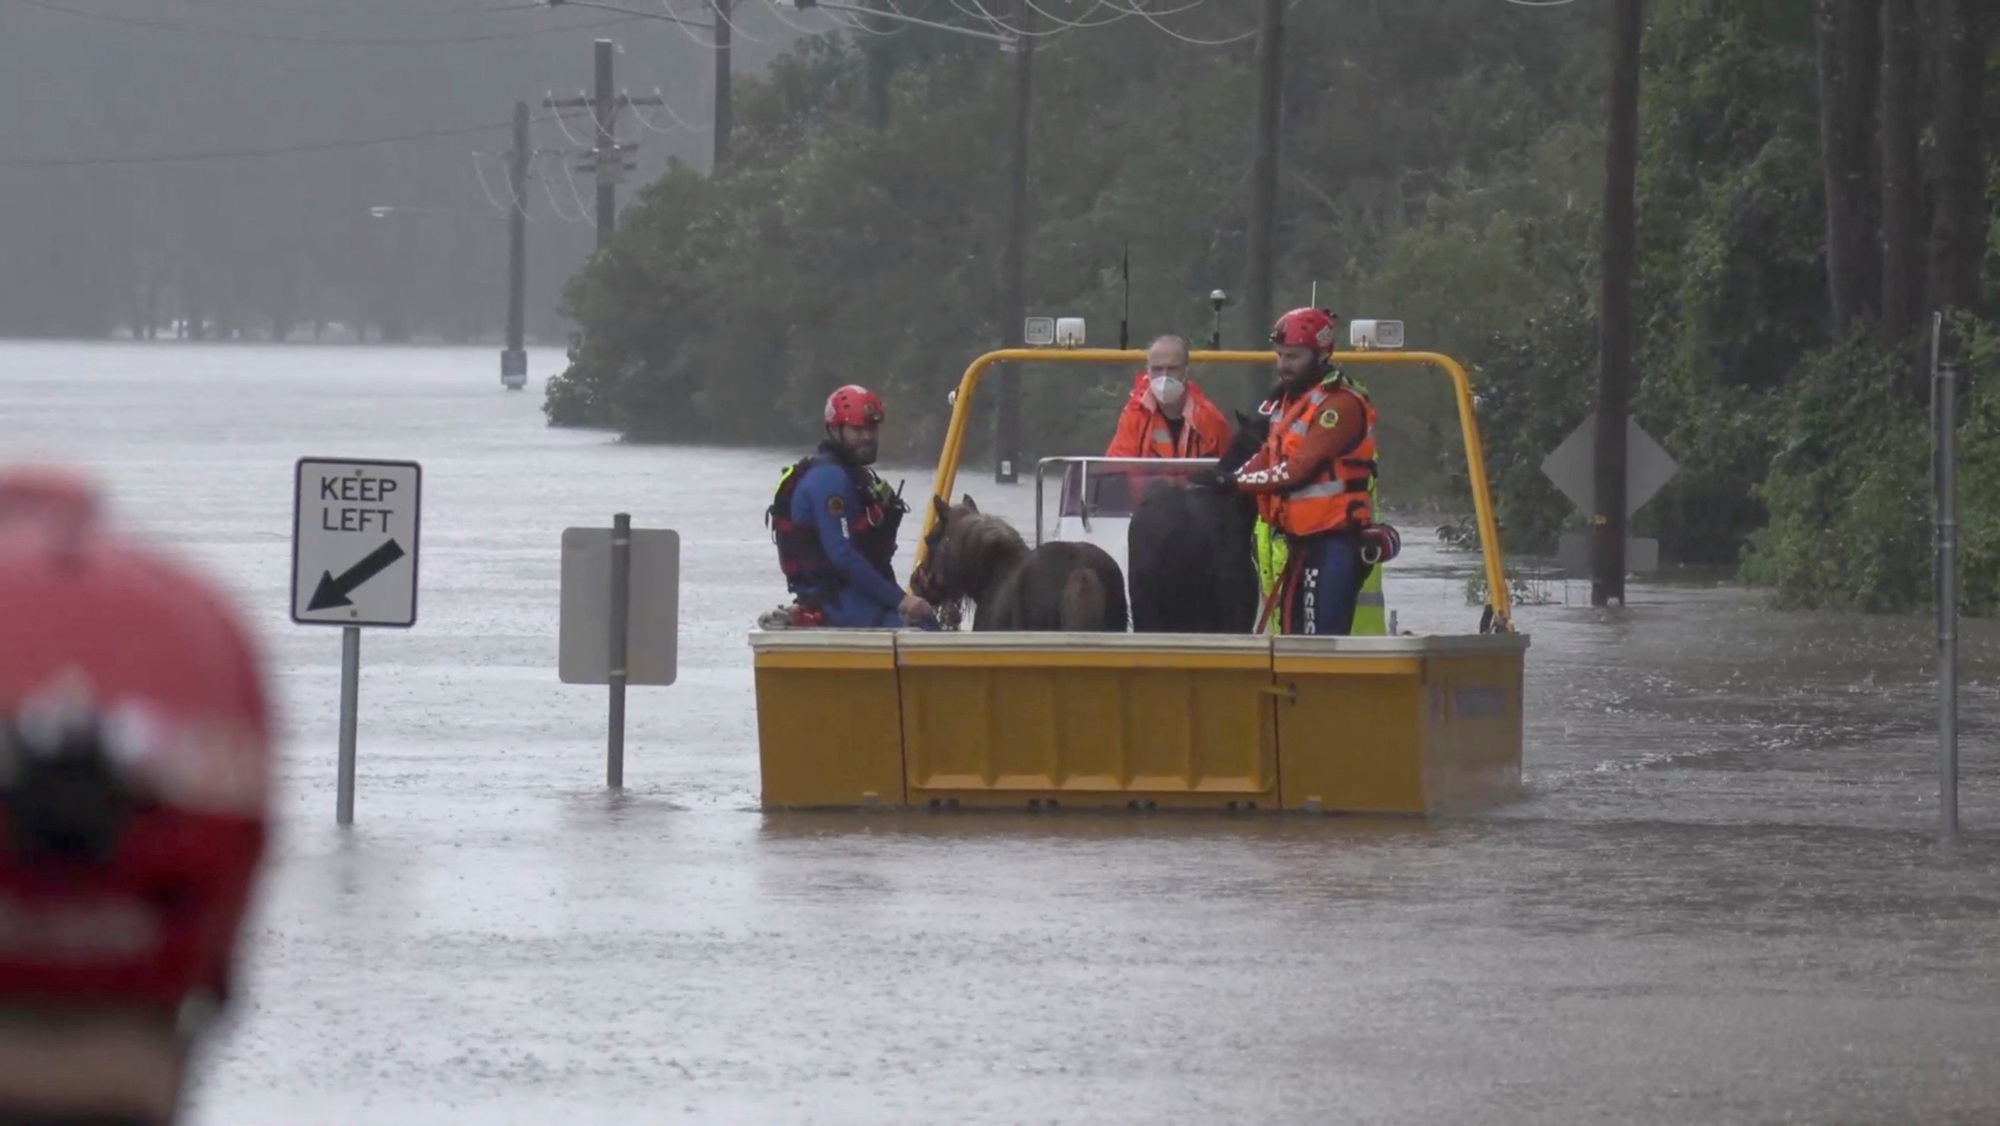 Úc ra lệnh sơ tán, người dân tuyệt vọng vì lũ lụt - Ảnh 1.